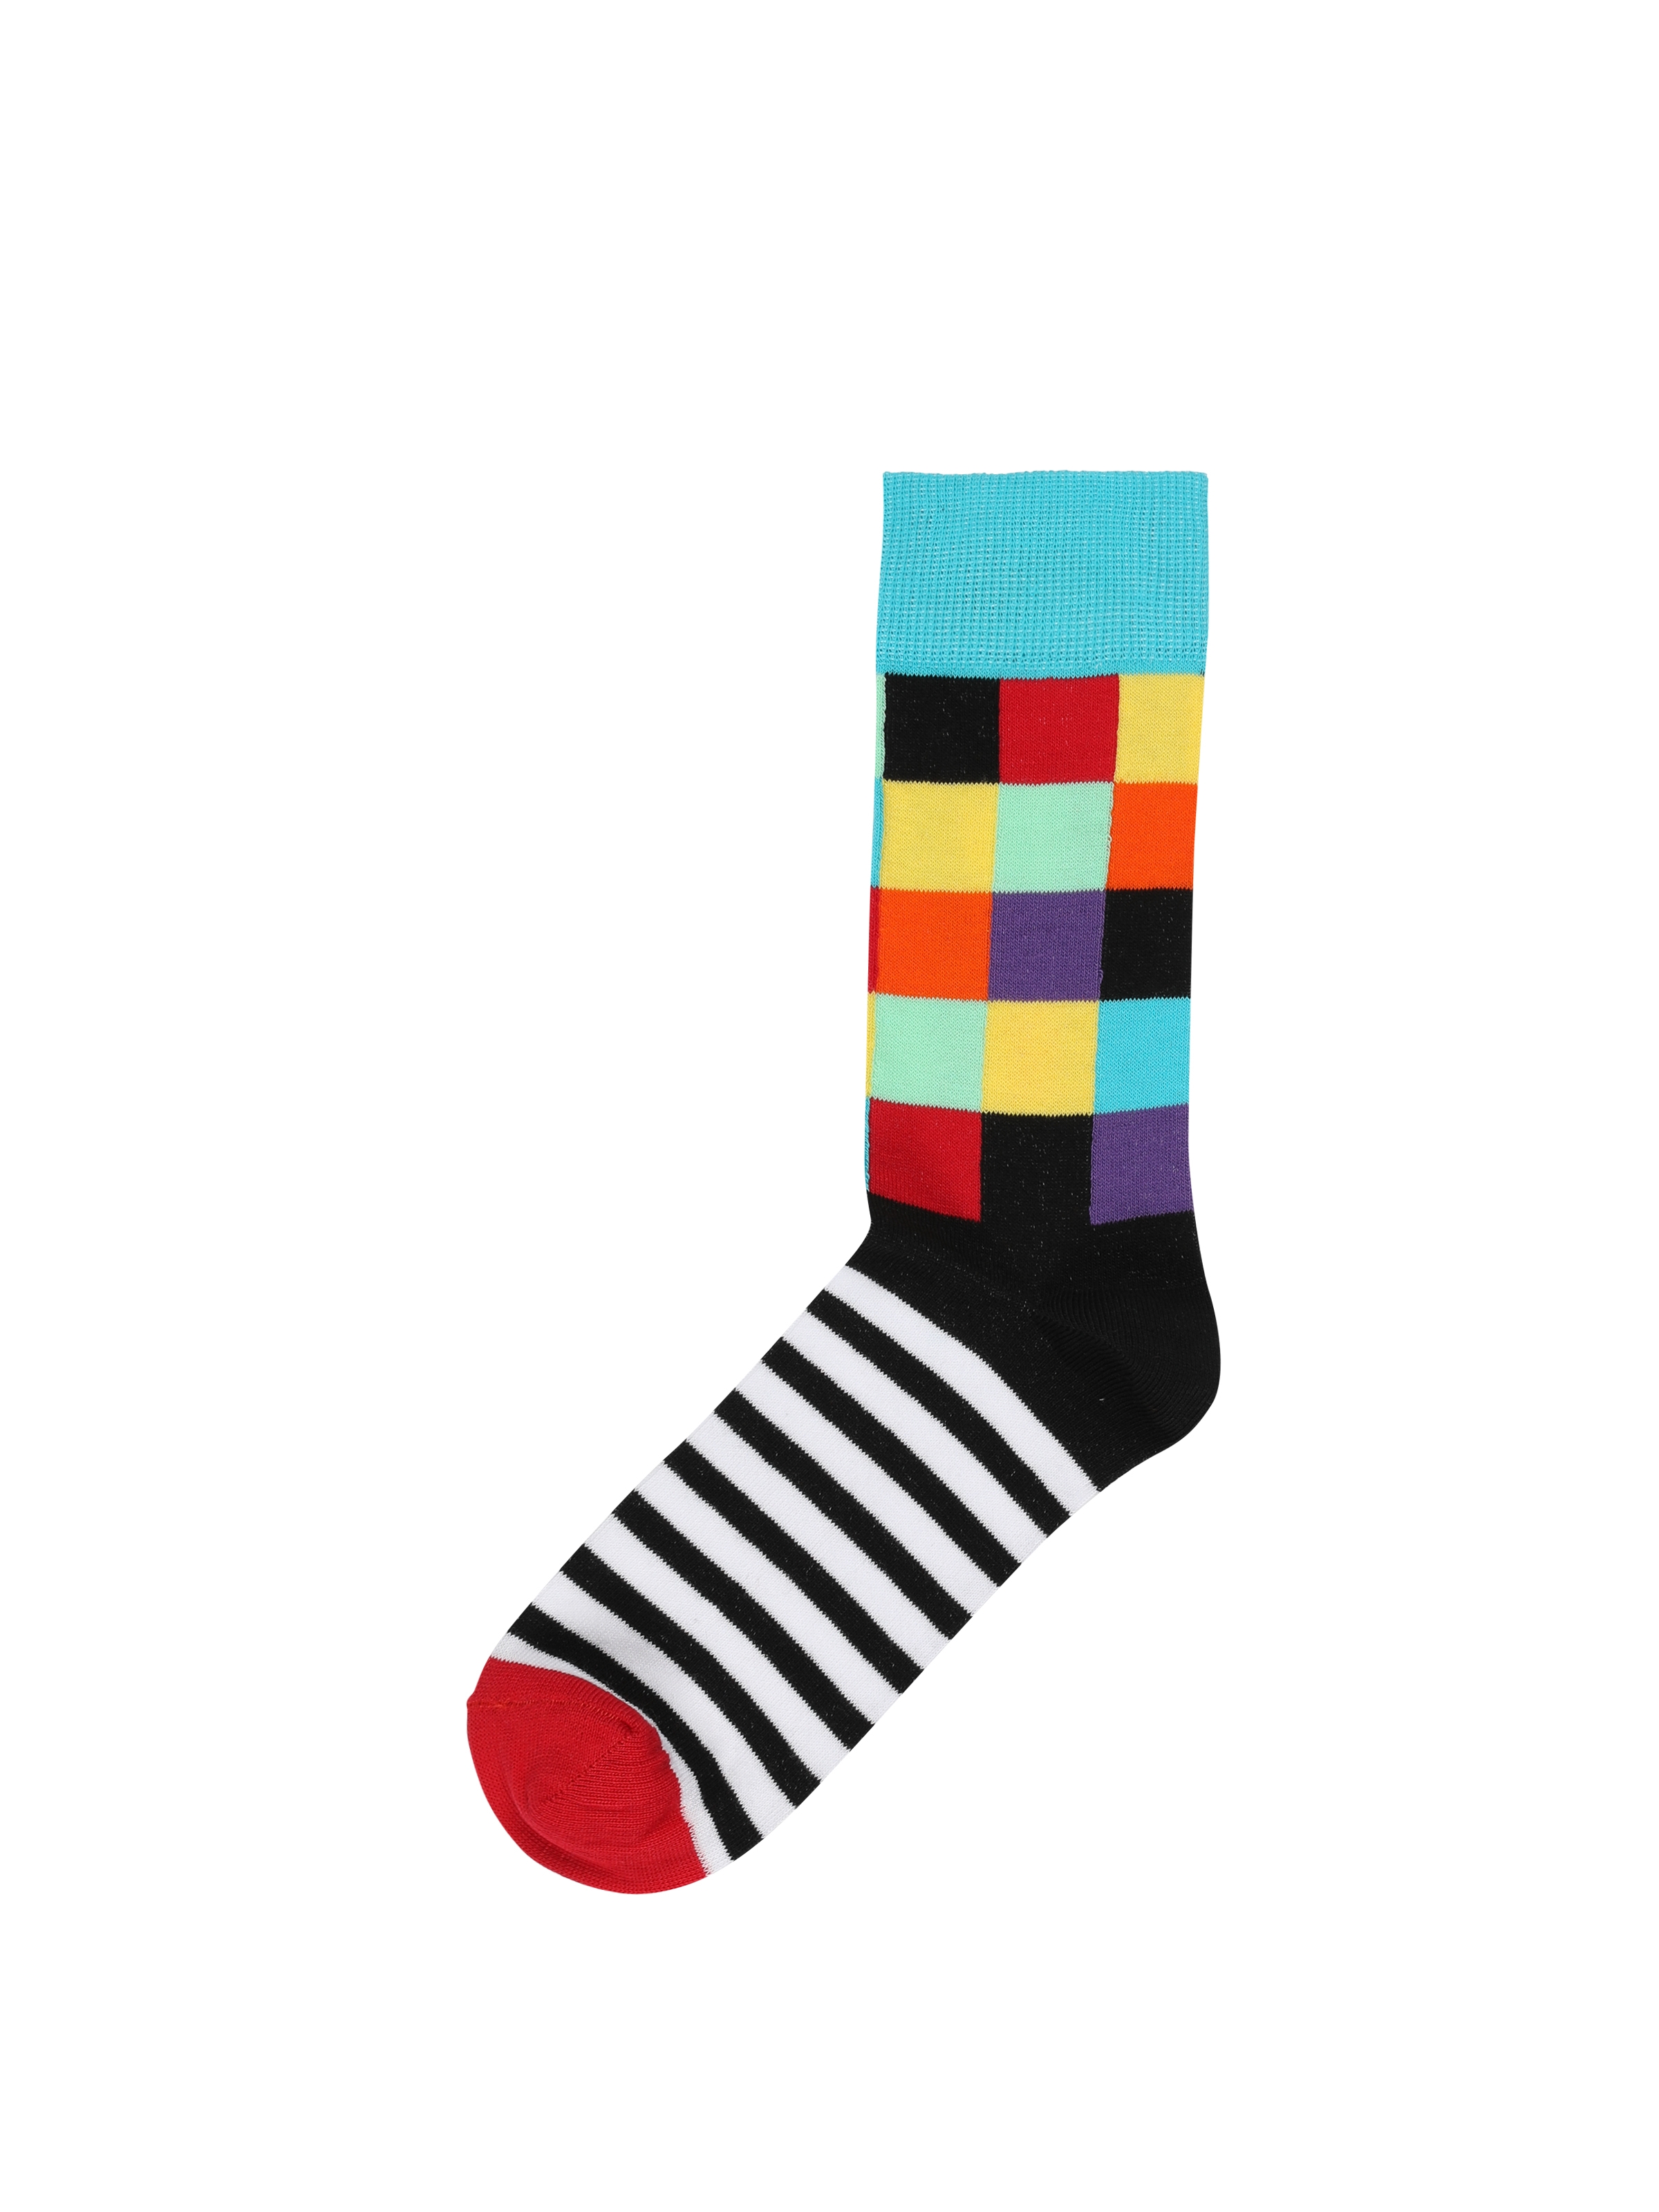 Baskılı Çok Renkli Erkek Çorap